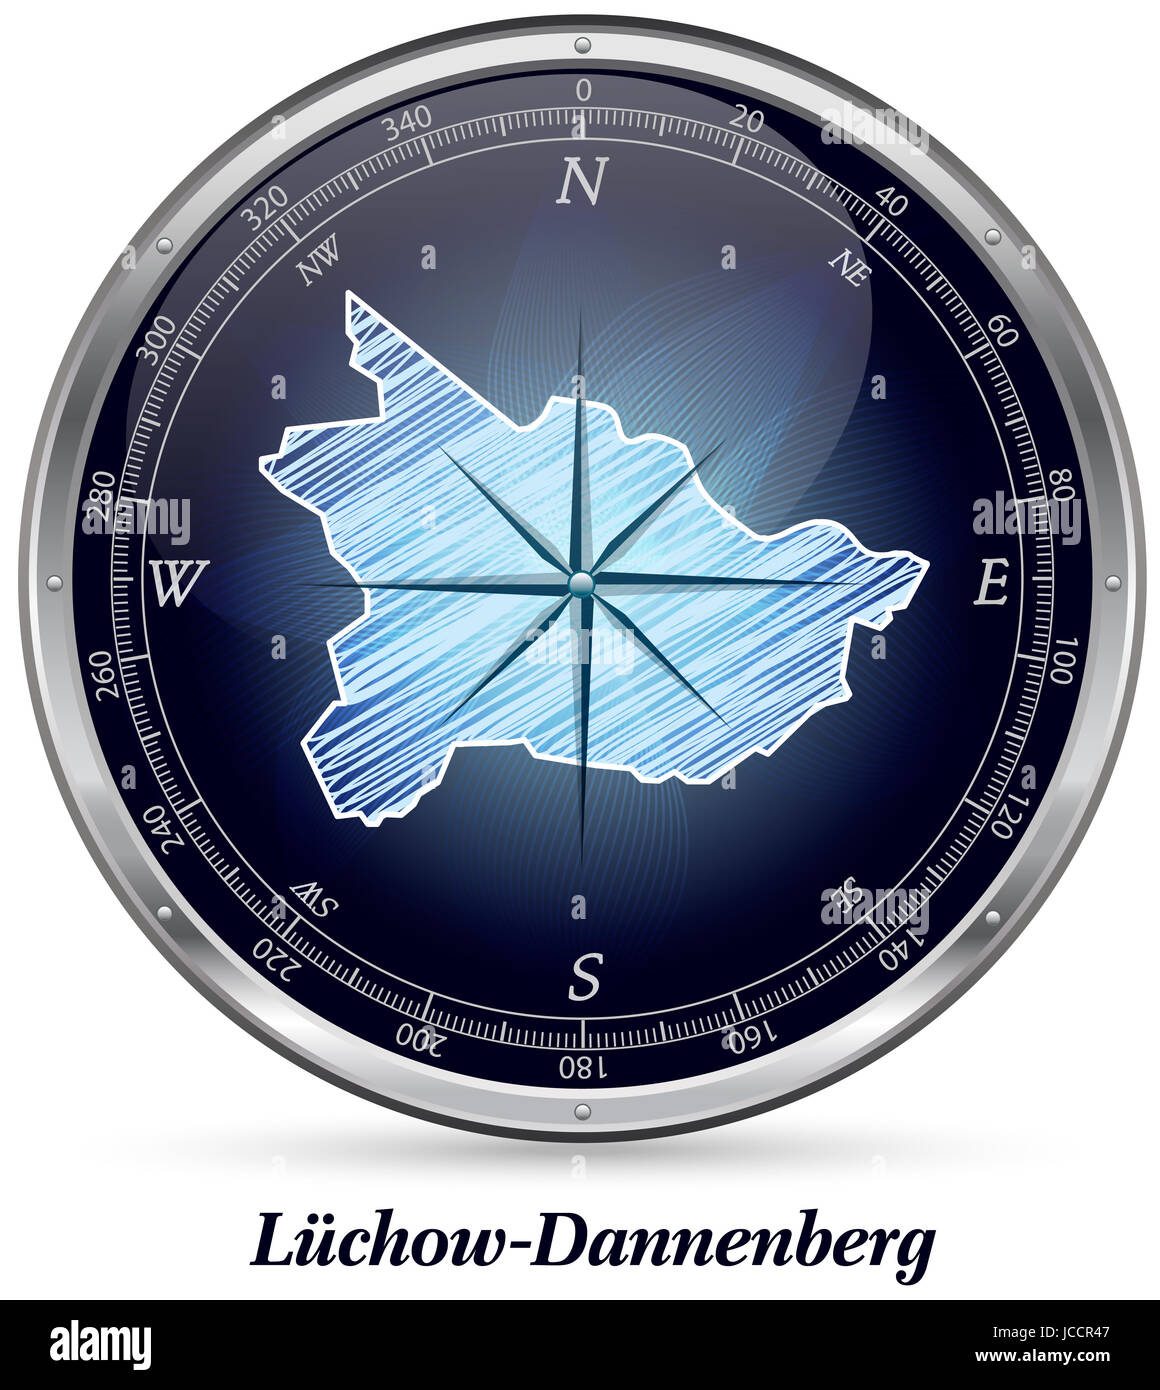 Luechow-Dannenberg mit Grenzen in Chrom Stock Photo